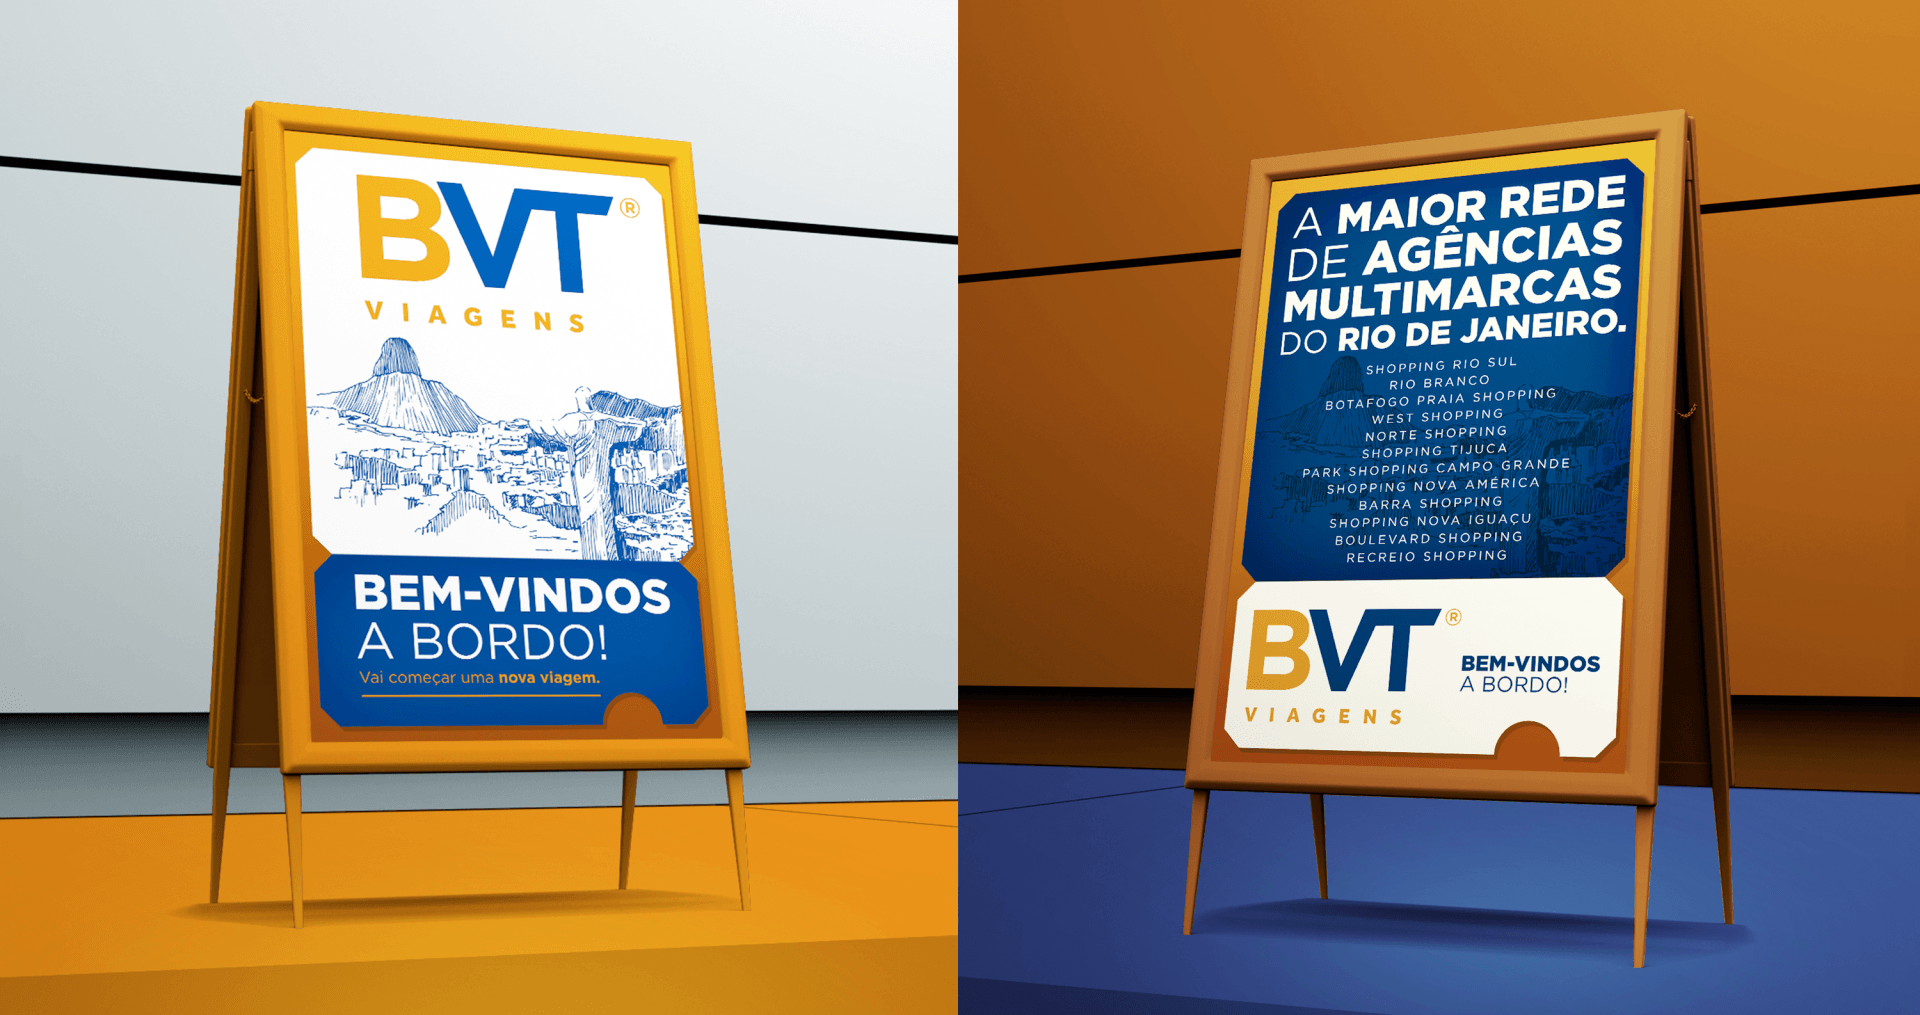 BVT Viagens Design